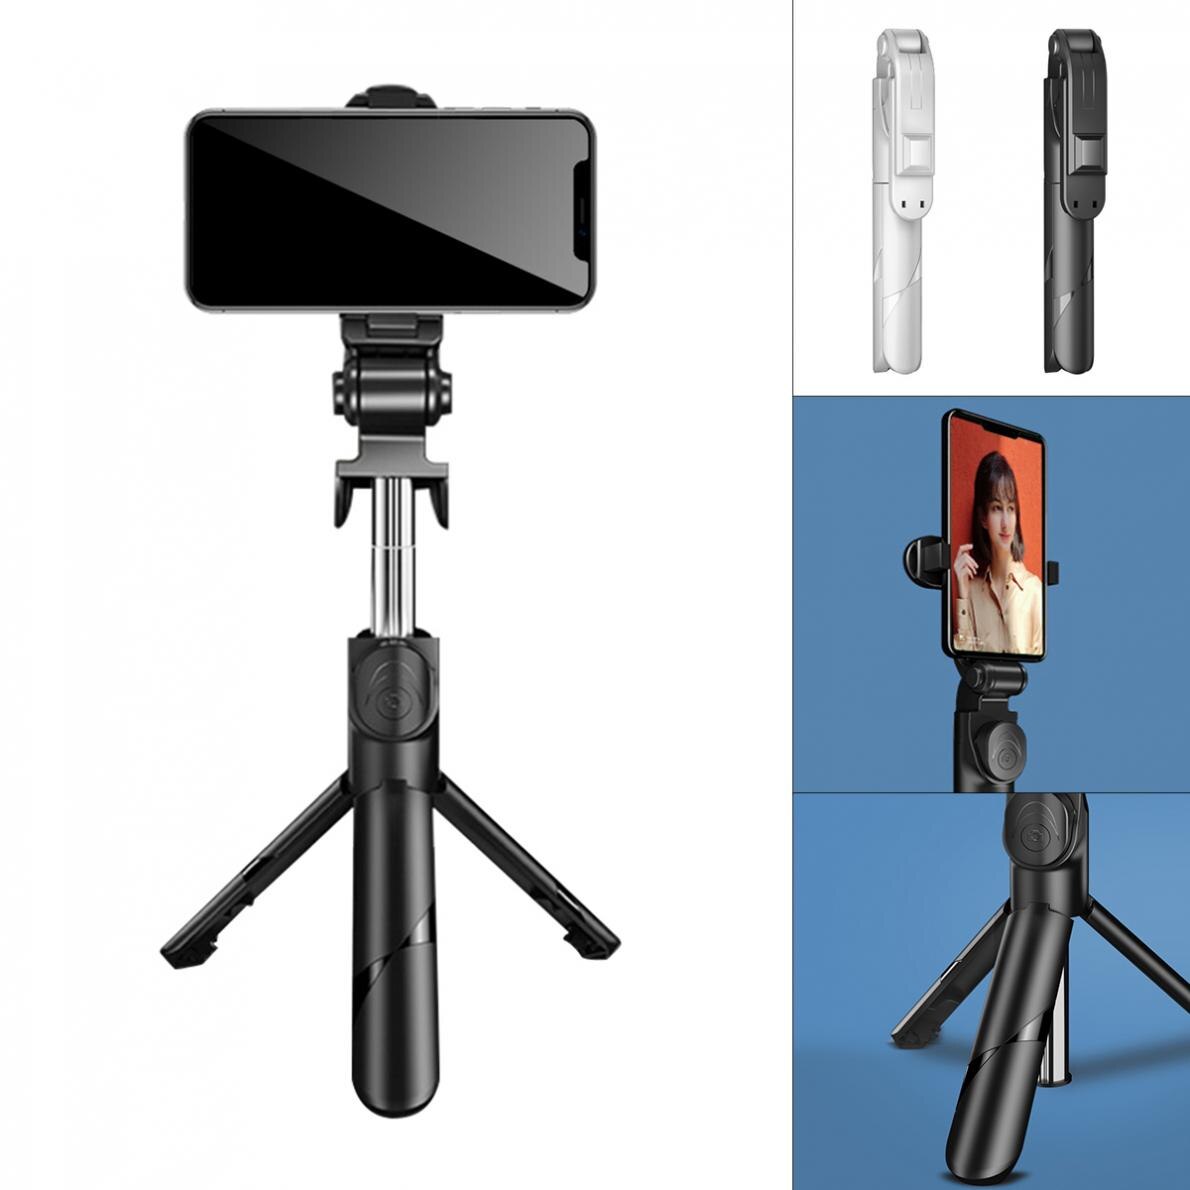 3 In 1 Selfie Stok Live Statief Afstandsbediening Mobiel Ondersteuning Voor Smartphone Fit Voor Live/Opnemen Video/chats